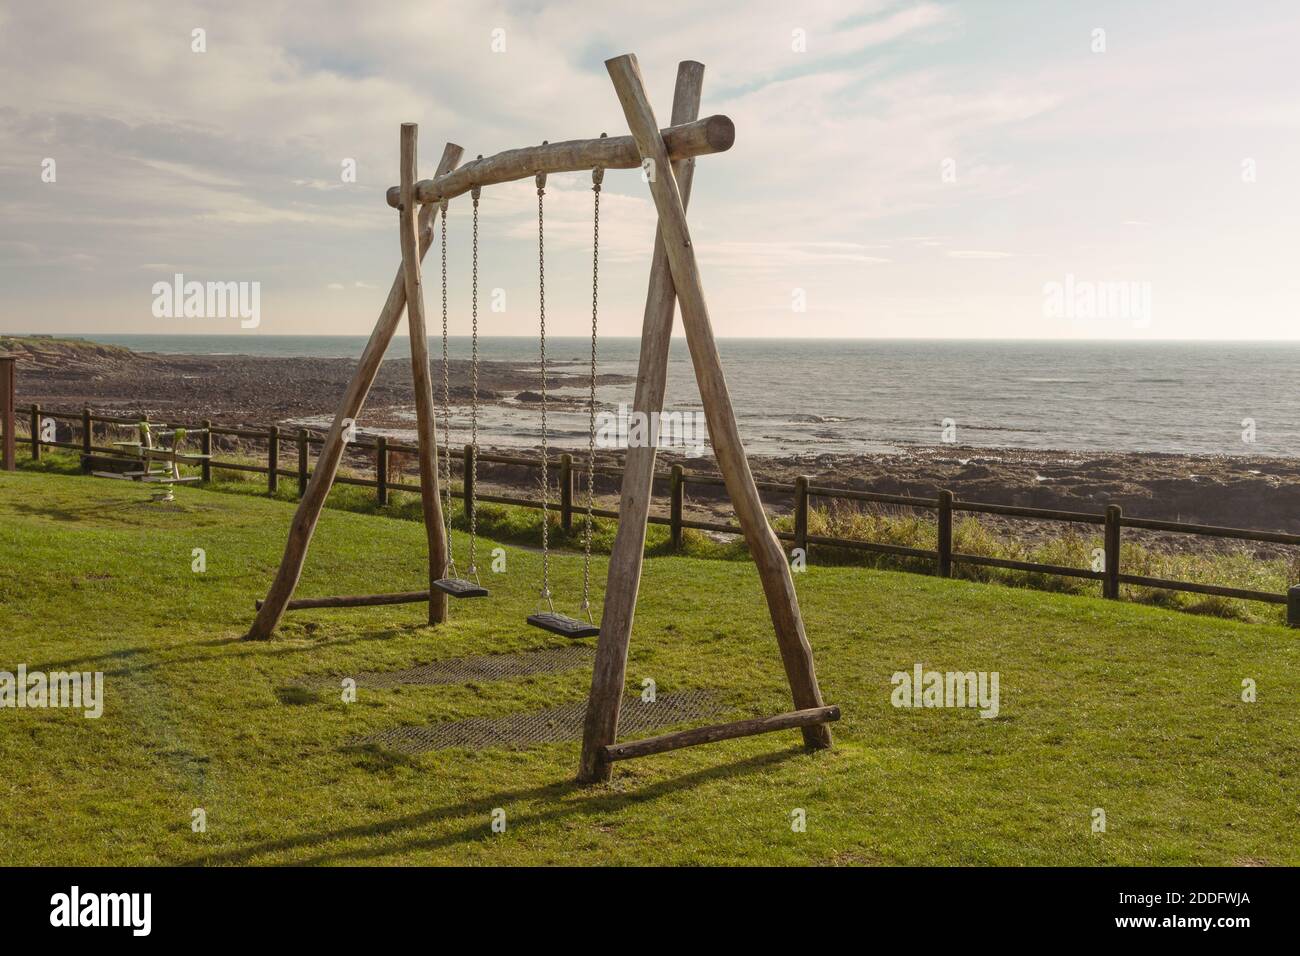 Due altalene per bambini in un parco sul mare, a Caal, Fife, Scozia. Le altalene sono vuote, pronte per i prossimi due bambini a divertirsi. Foto Stock